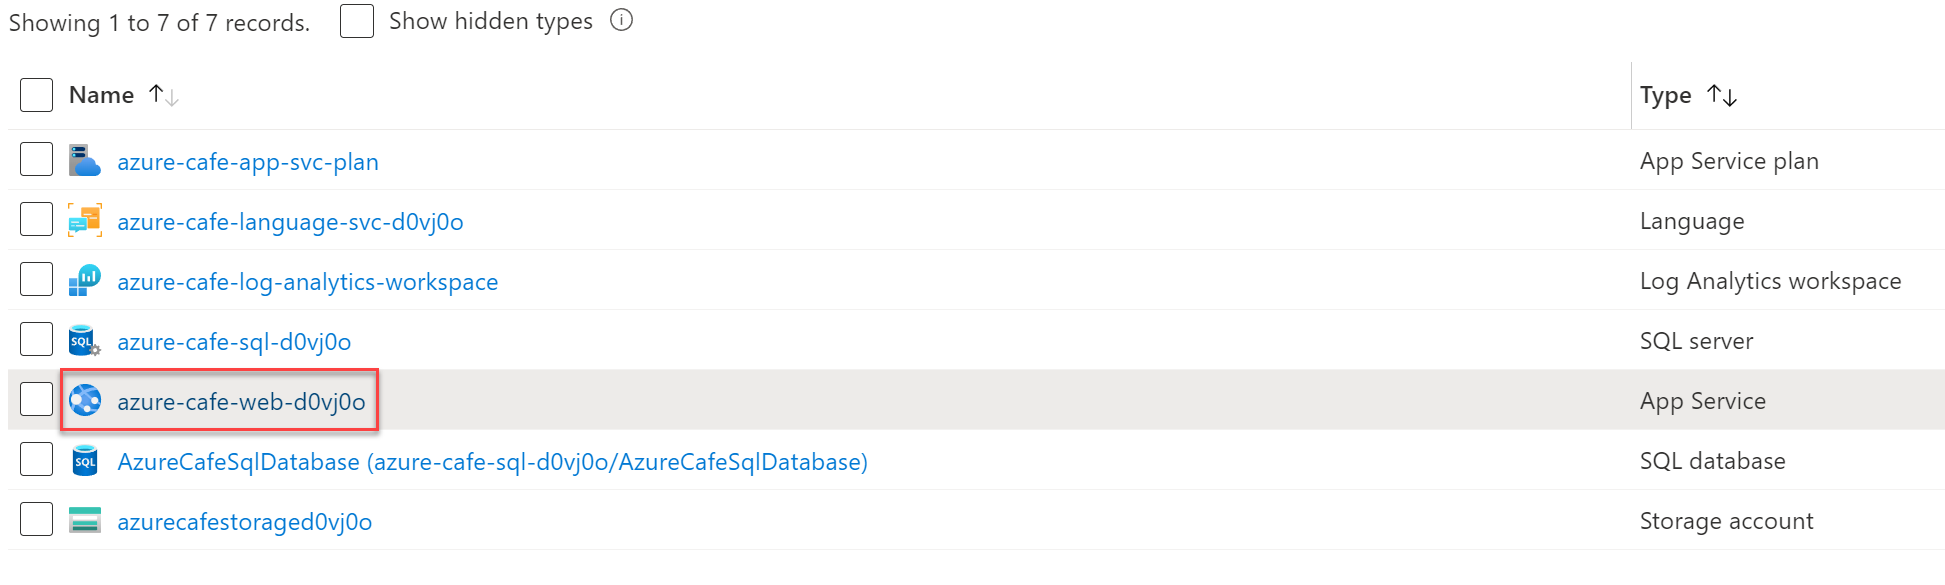 顯示 Azure Cafe 資源群組，並醒目提示了 azure-cafe-web-{SUFFIX} 資源。